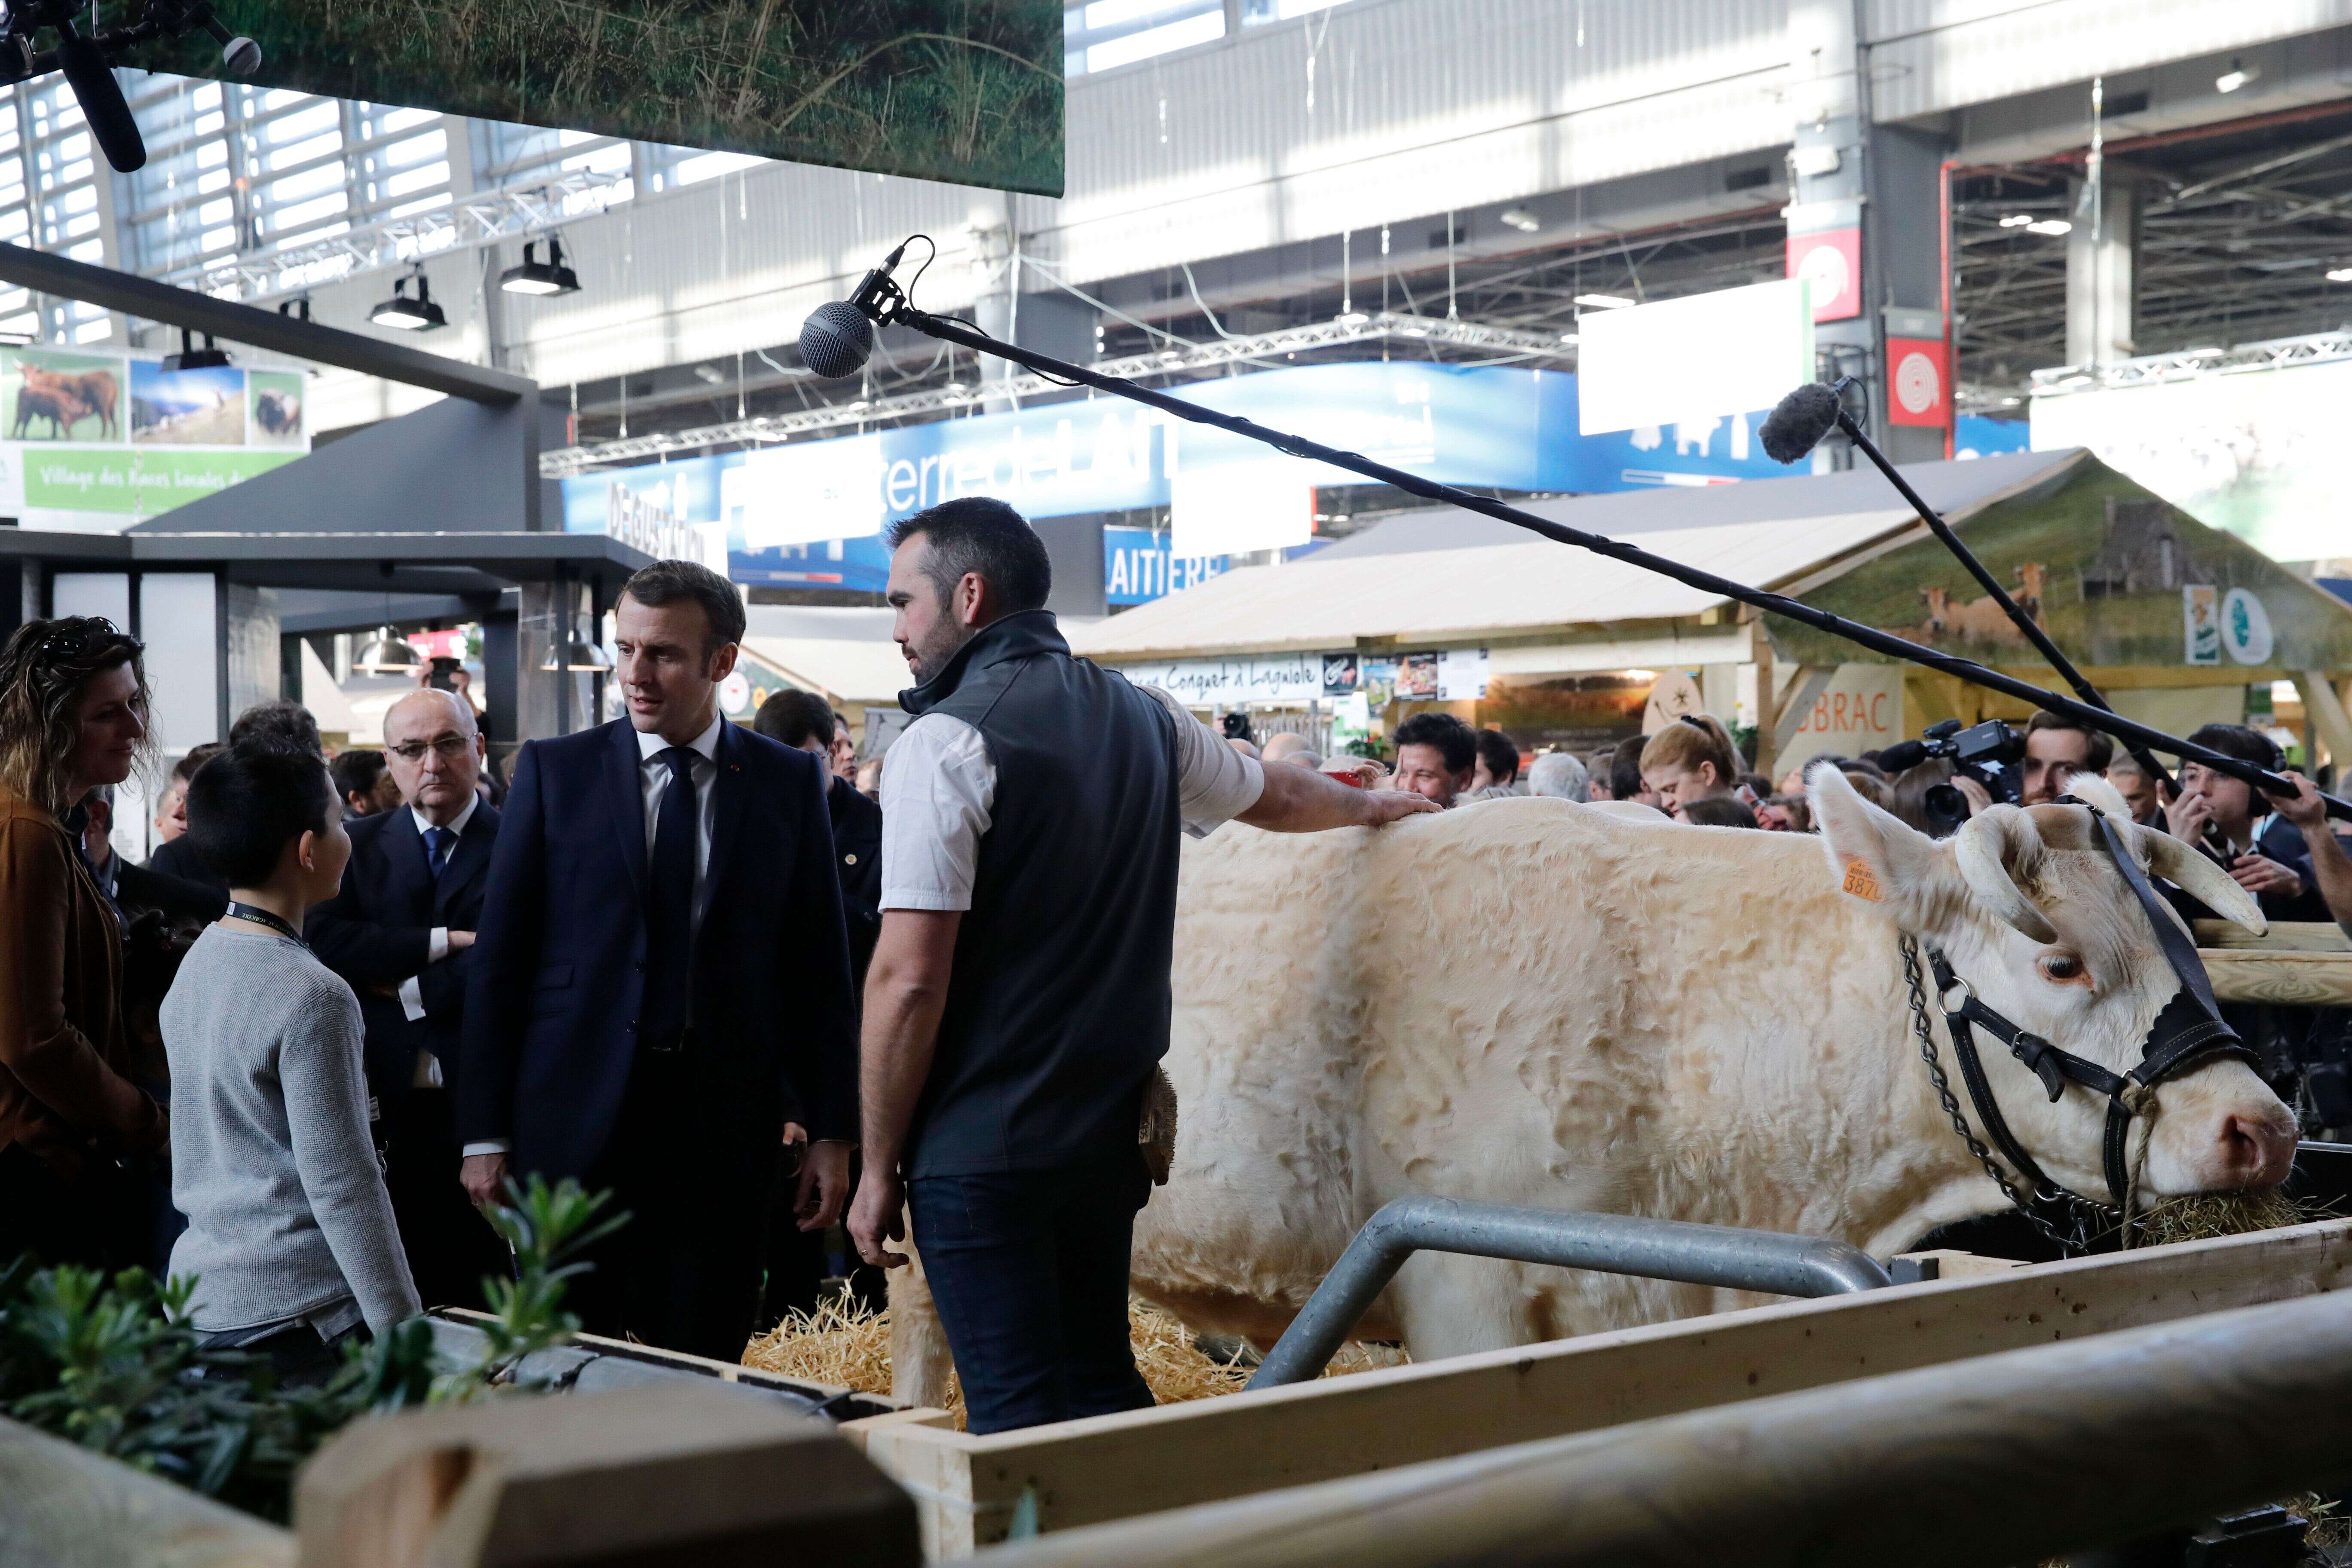 Le Salon de l'agriculture 2021 est annulé à cause du coronavirus (Image d'illustration: Emmanuel Macron au Salon 2020 le 22 février).